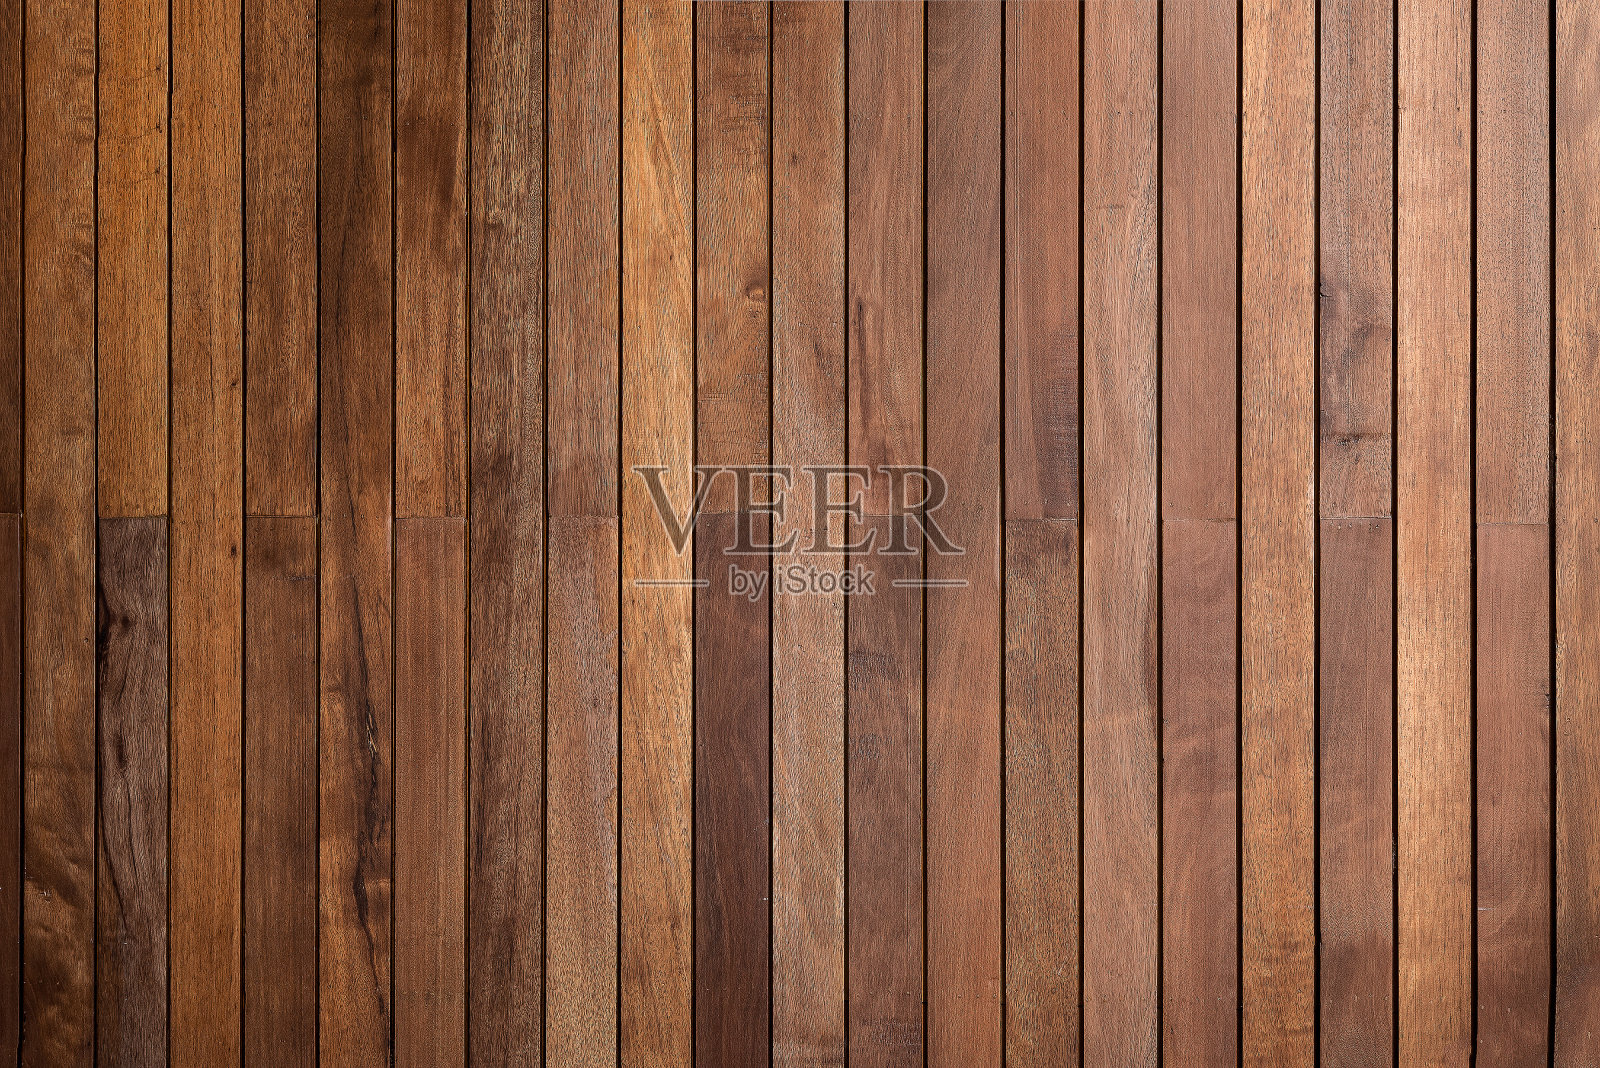 木材木材棕色橡木板用作背景插画图片素材